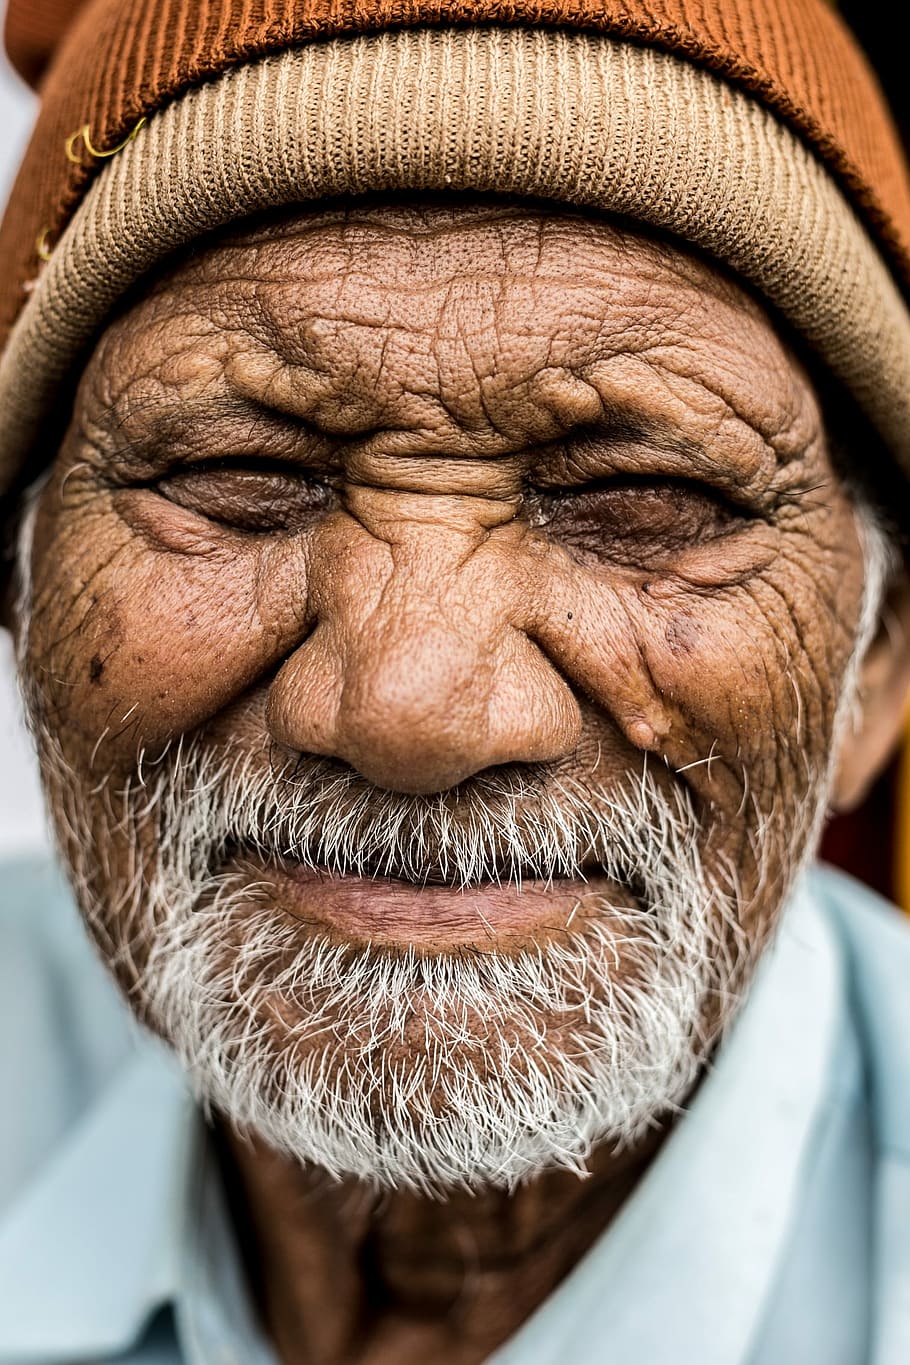 man wearing brown knit cap close up photo, senior Adult, men